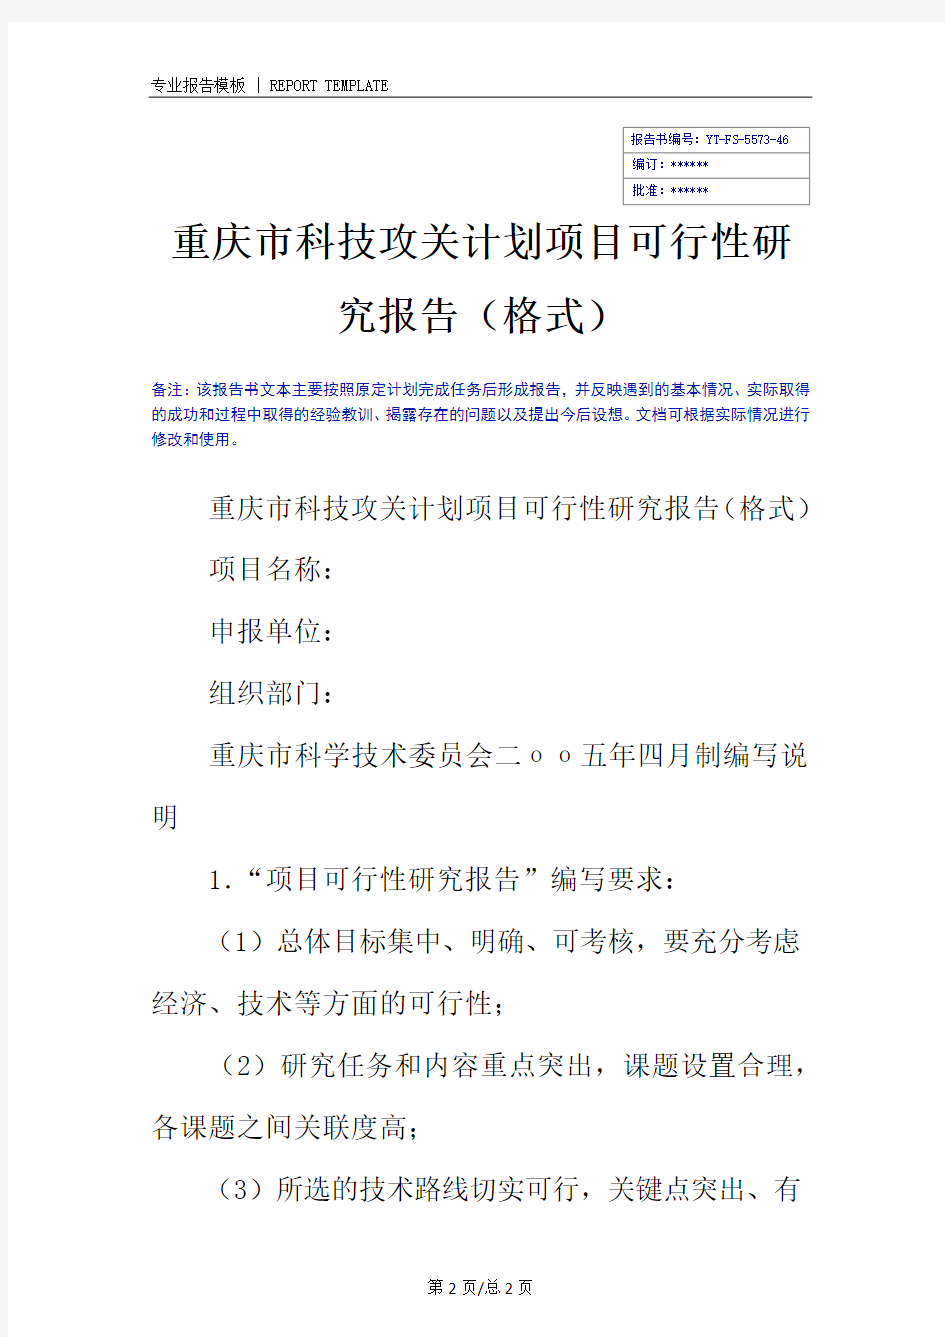 重庆市科技攻关计划项目可行性研究报告(格式)